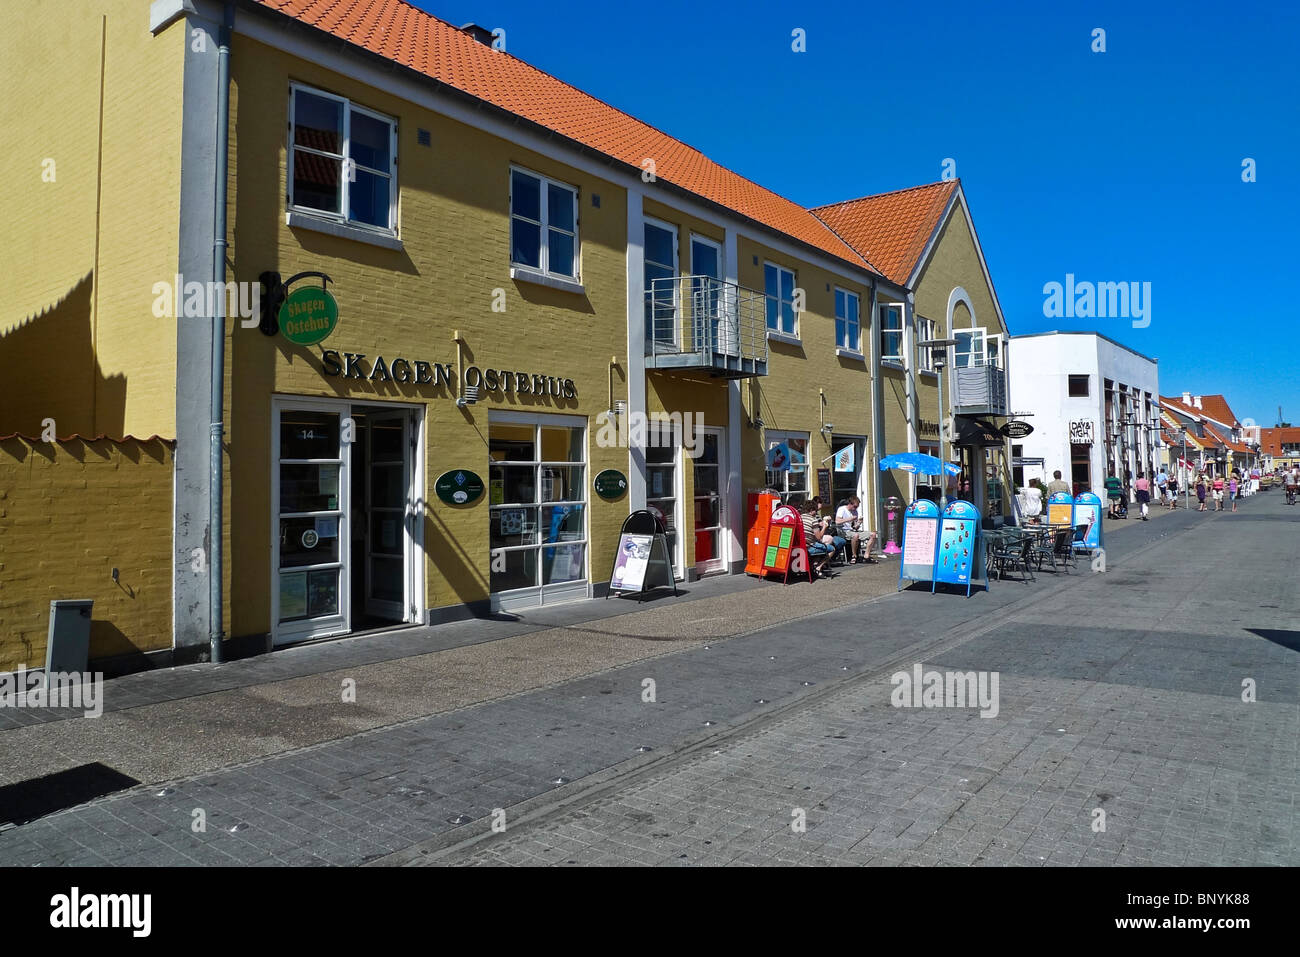 Restaurants and Cafe culture in Havnevej Skagen Denmark Stock Photo - Alamy